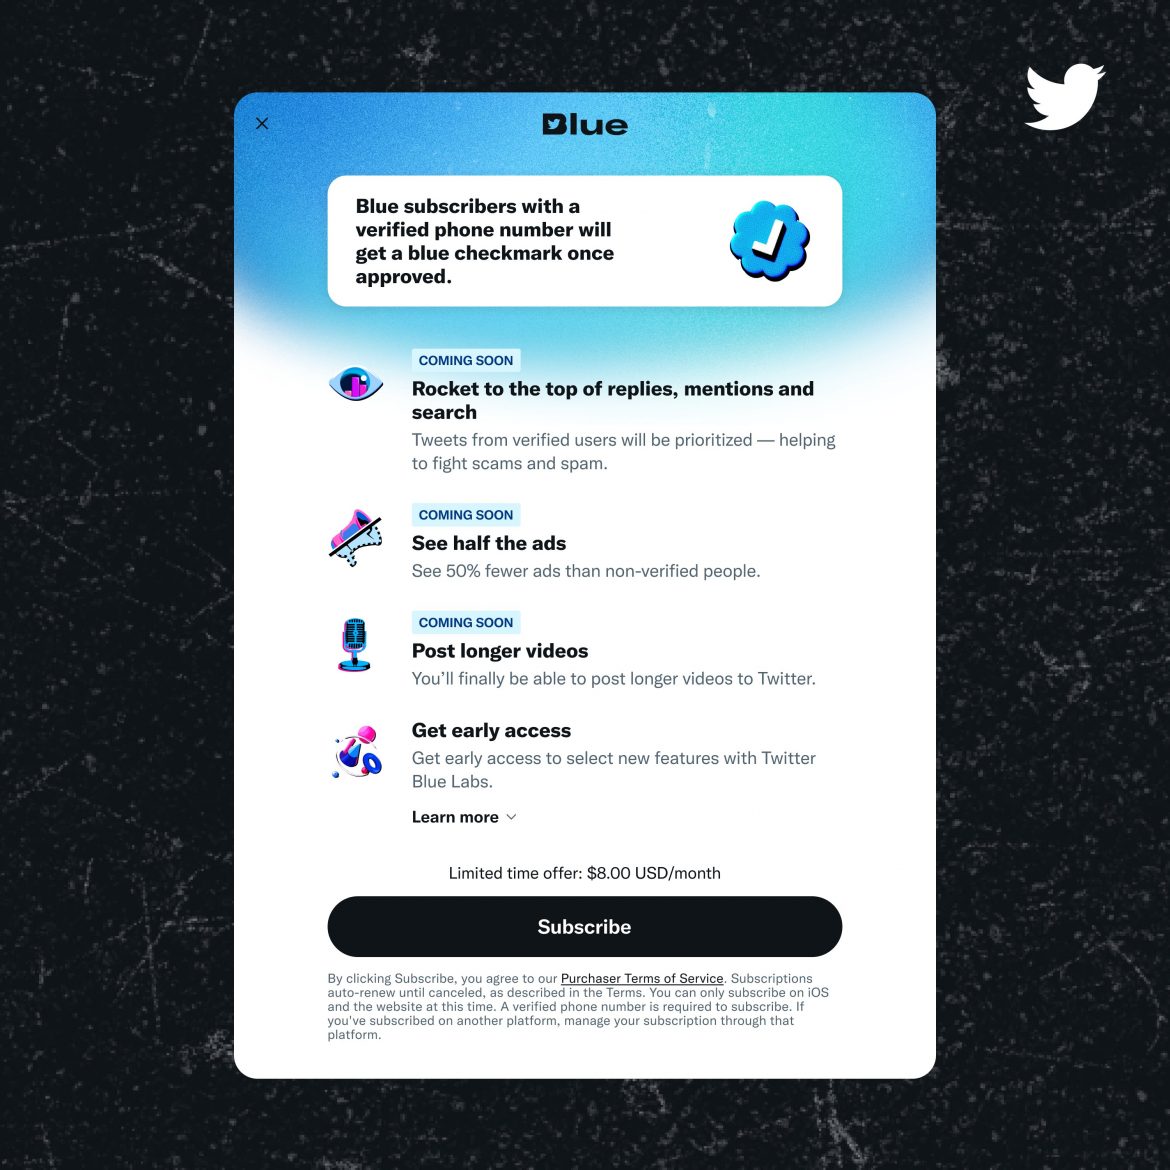 Twitter mở lại dịch vụ Twitter Blue, nhiều điểm cải tiến